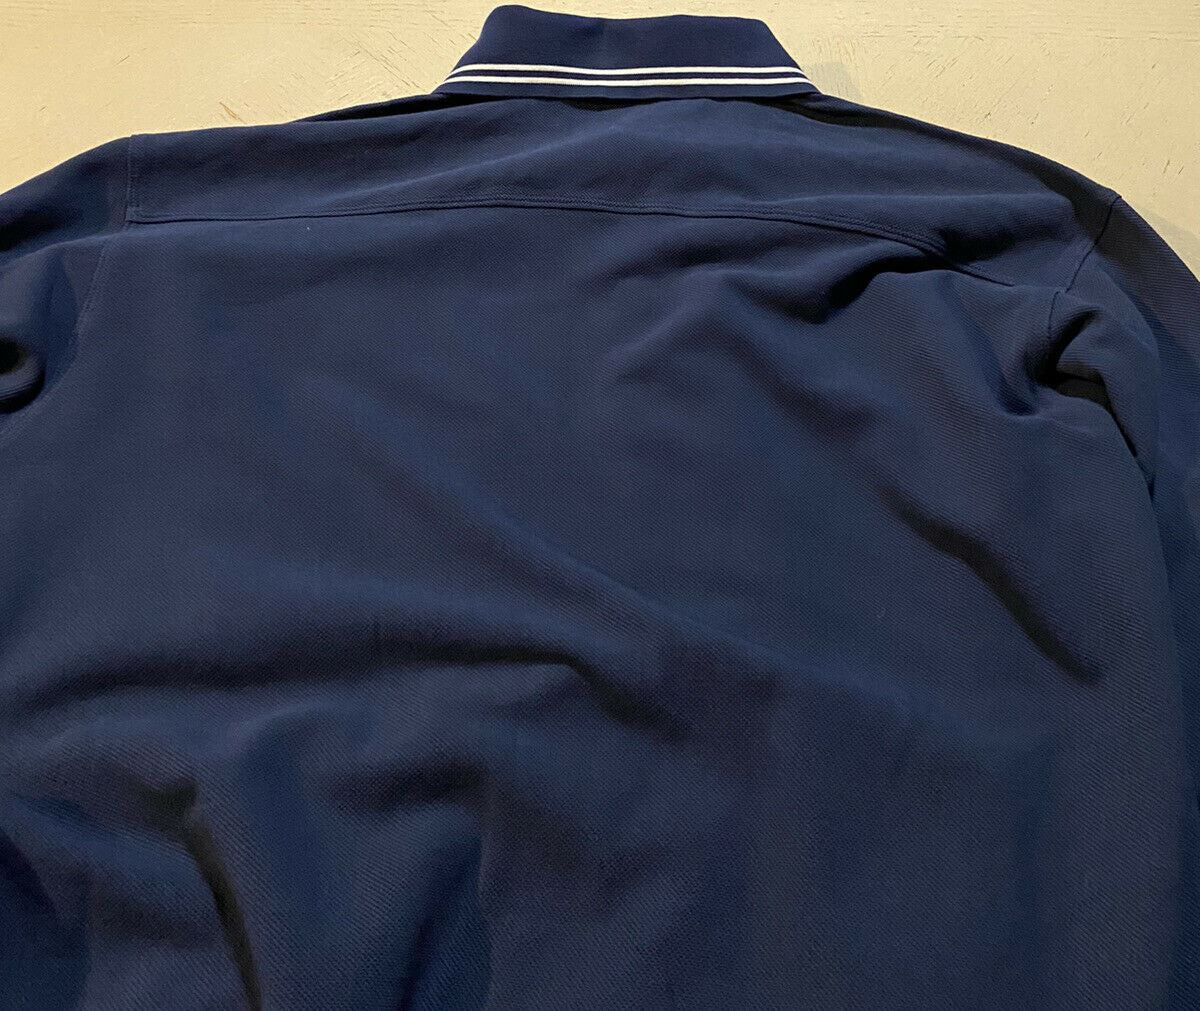 Мужская рубашка-поло большого размера с длинным рукавом NWT Gucci, королевский синий размер S, Италия